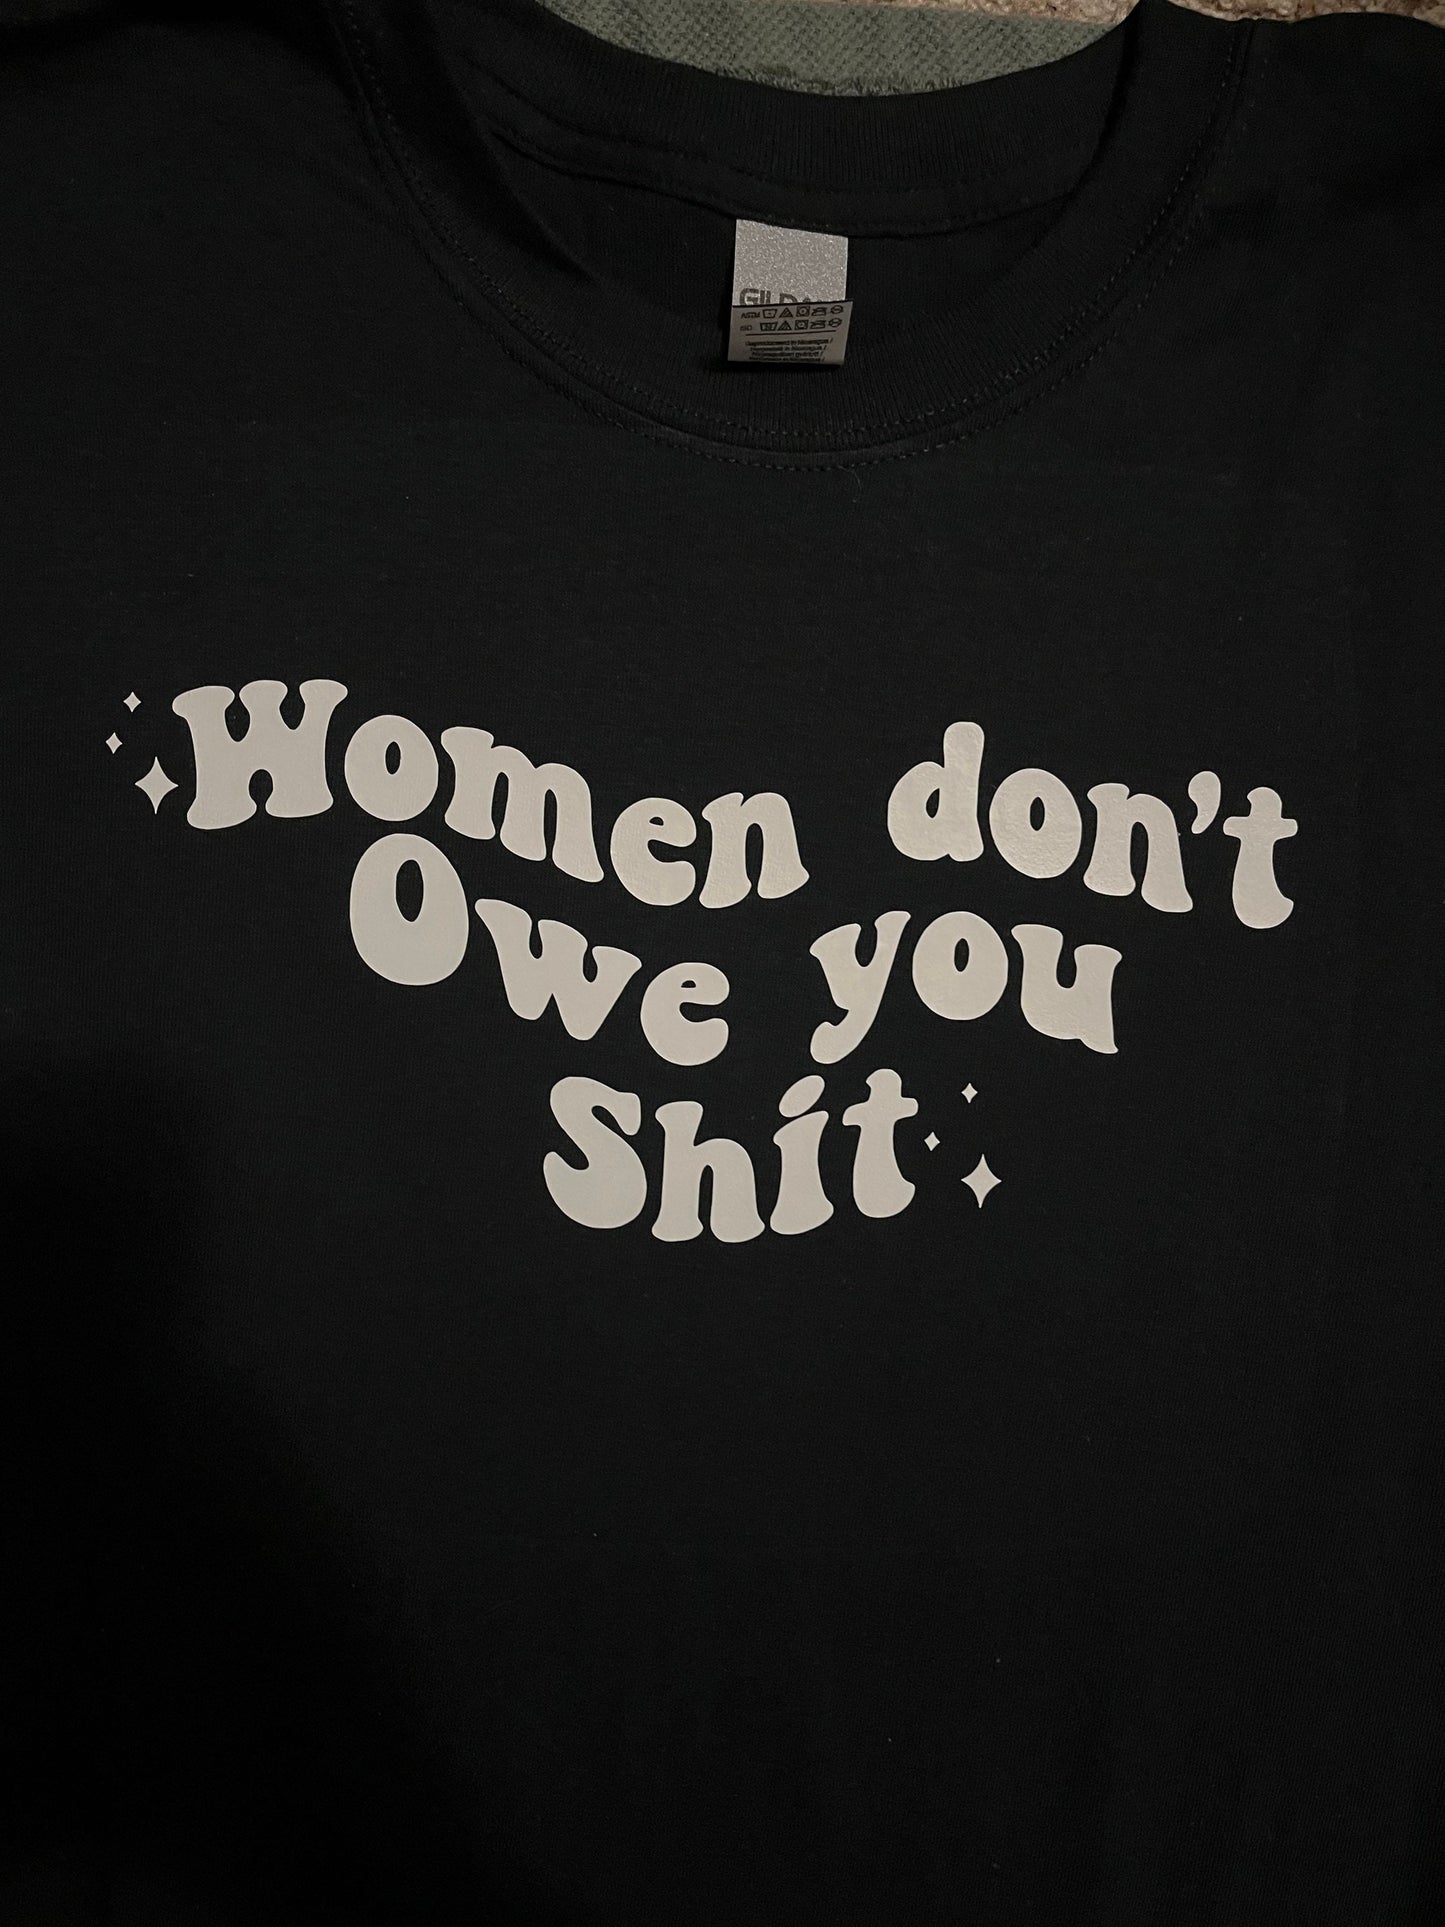 Women Don't Owe You Shit